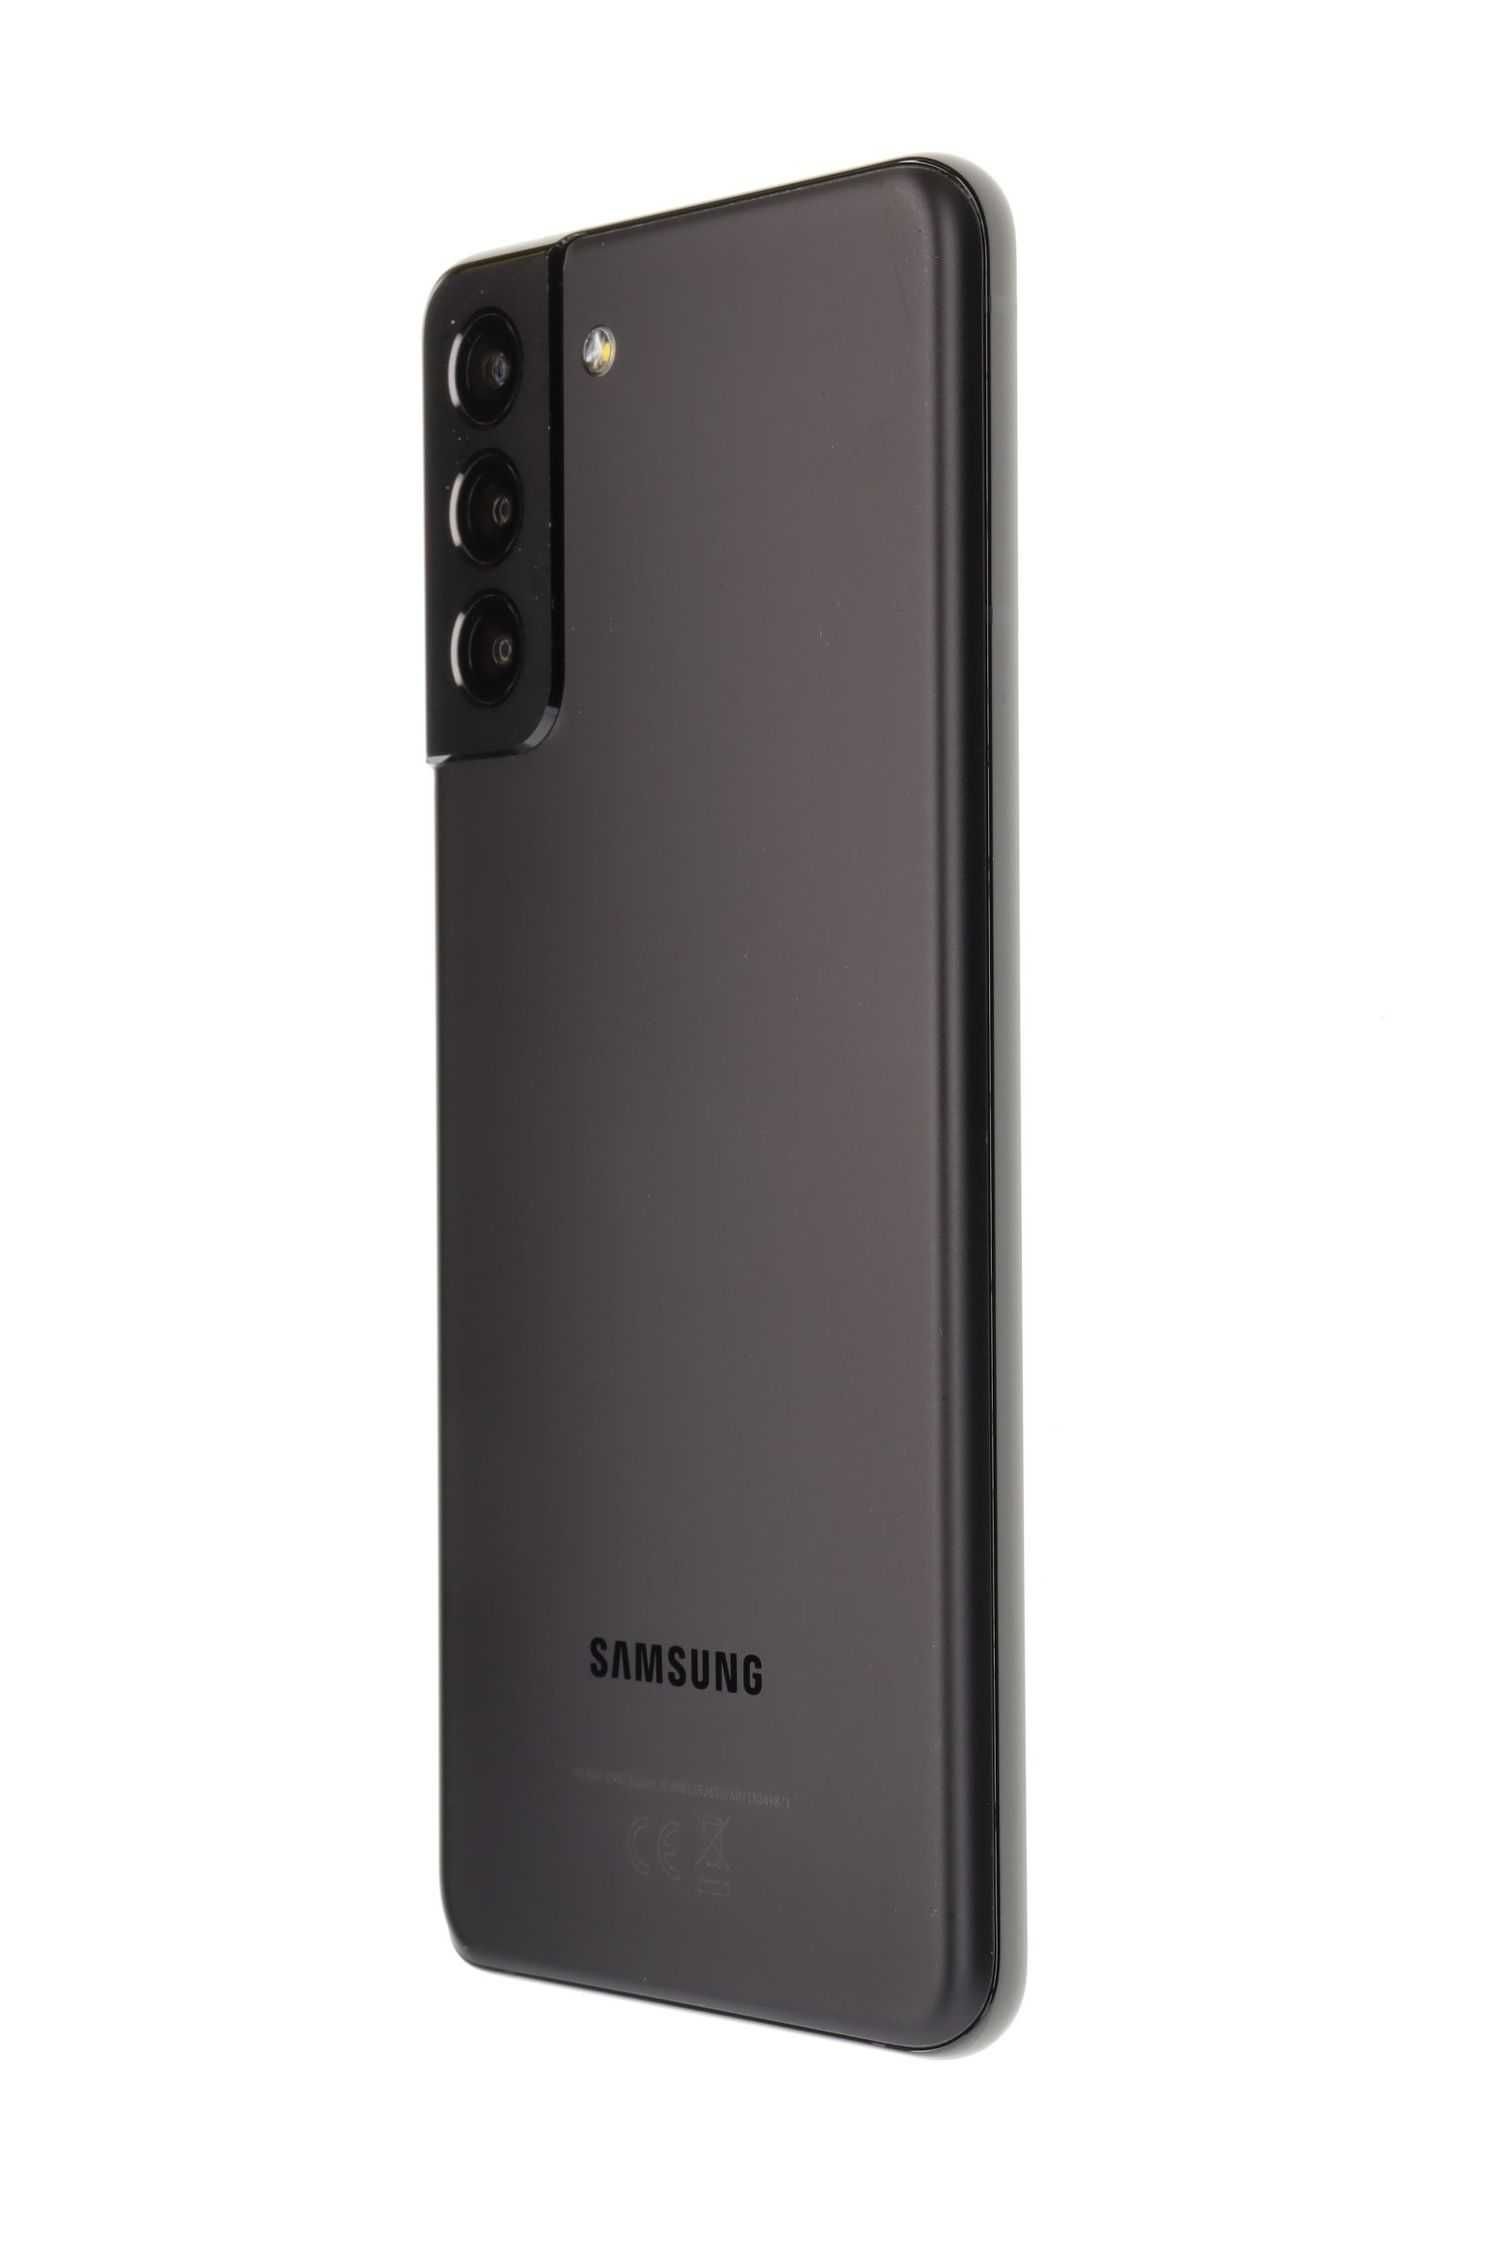 Vand piese Samsung S21+ 5G